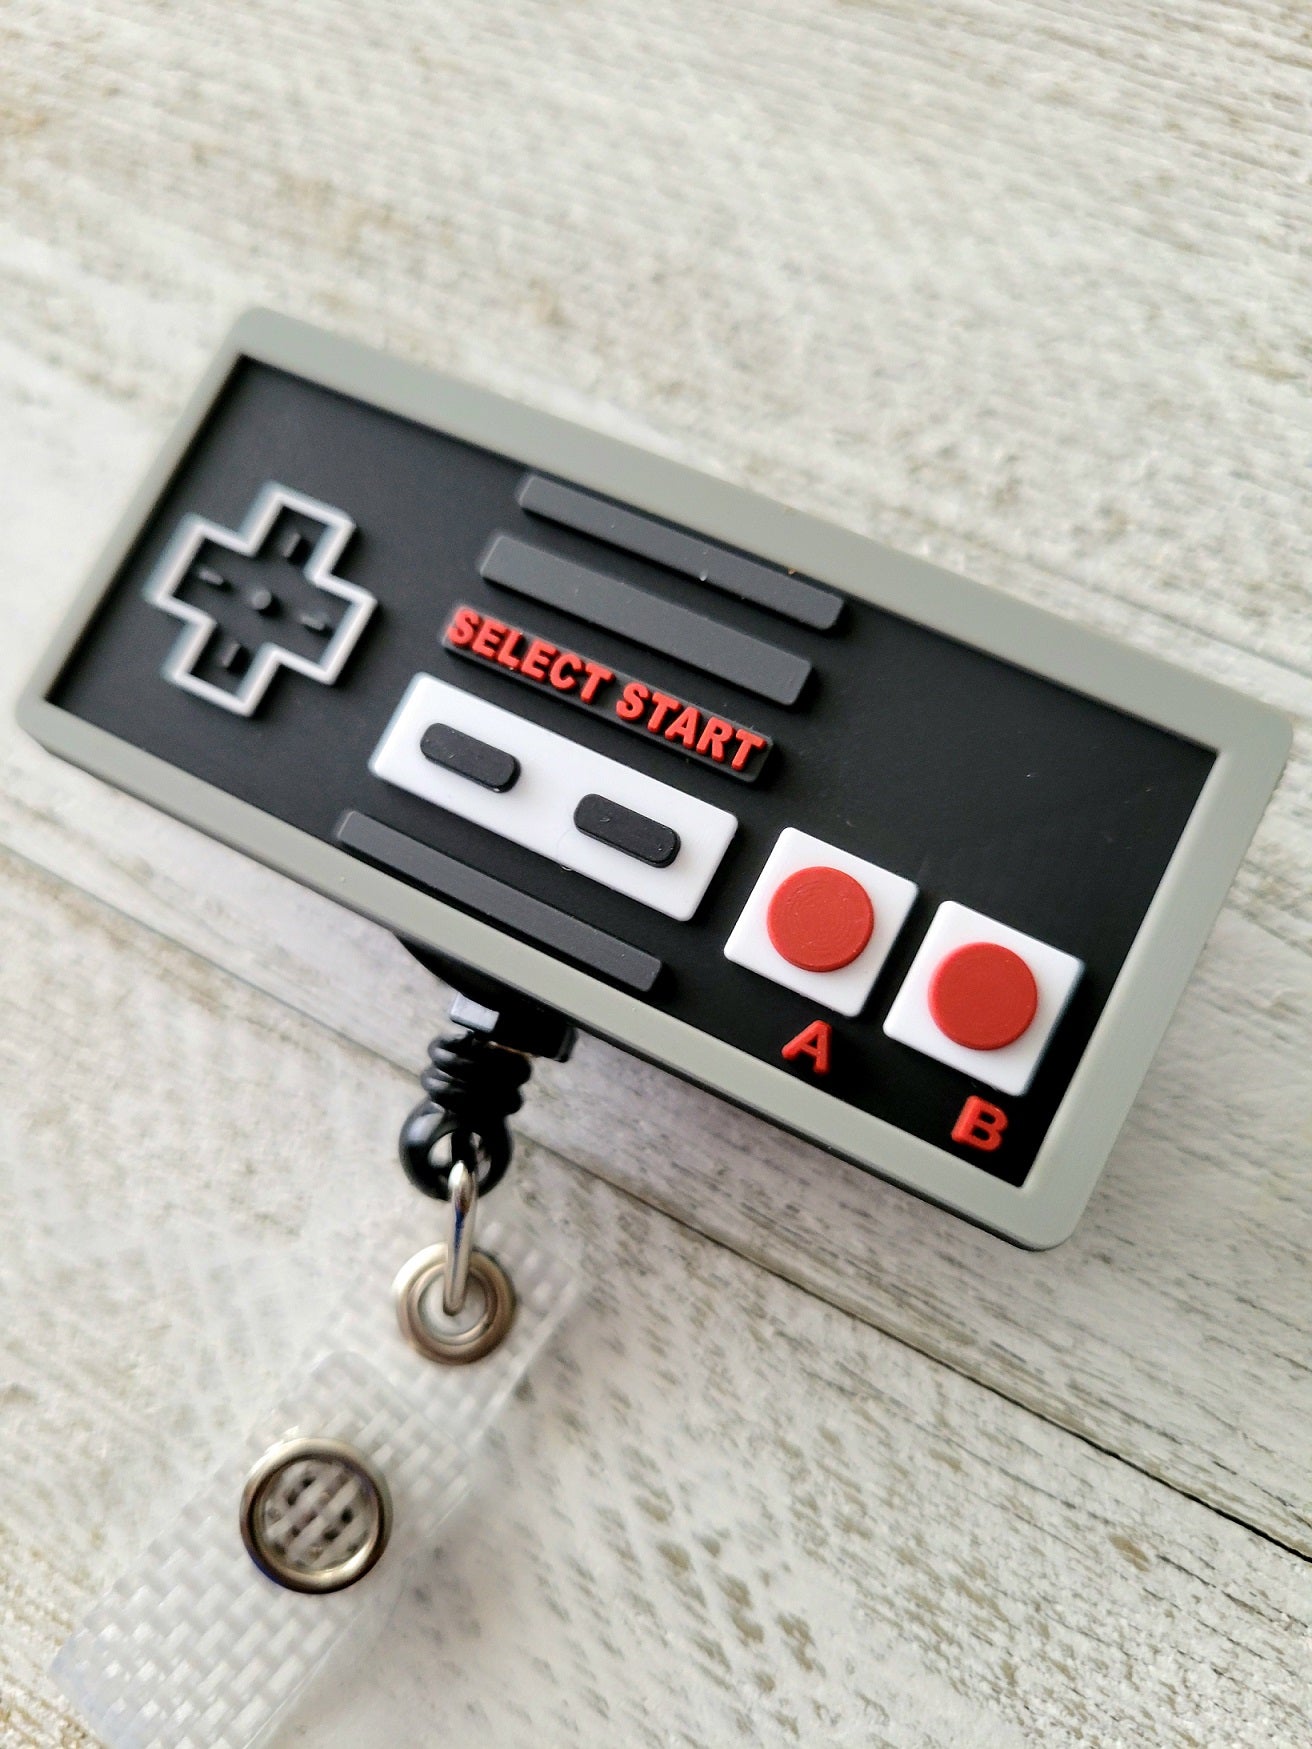 Pin on Nintendo Nostalgia